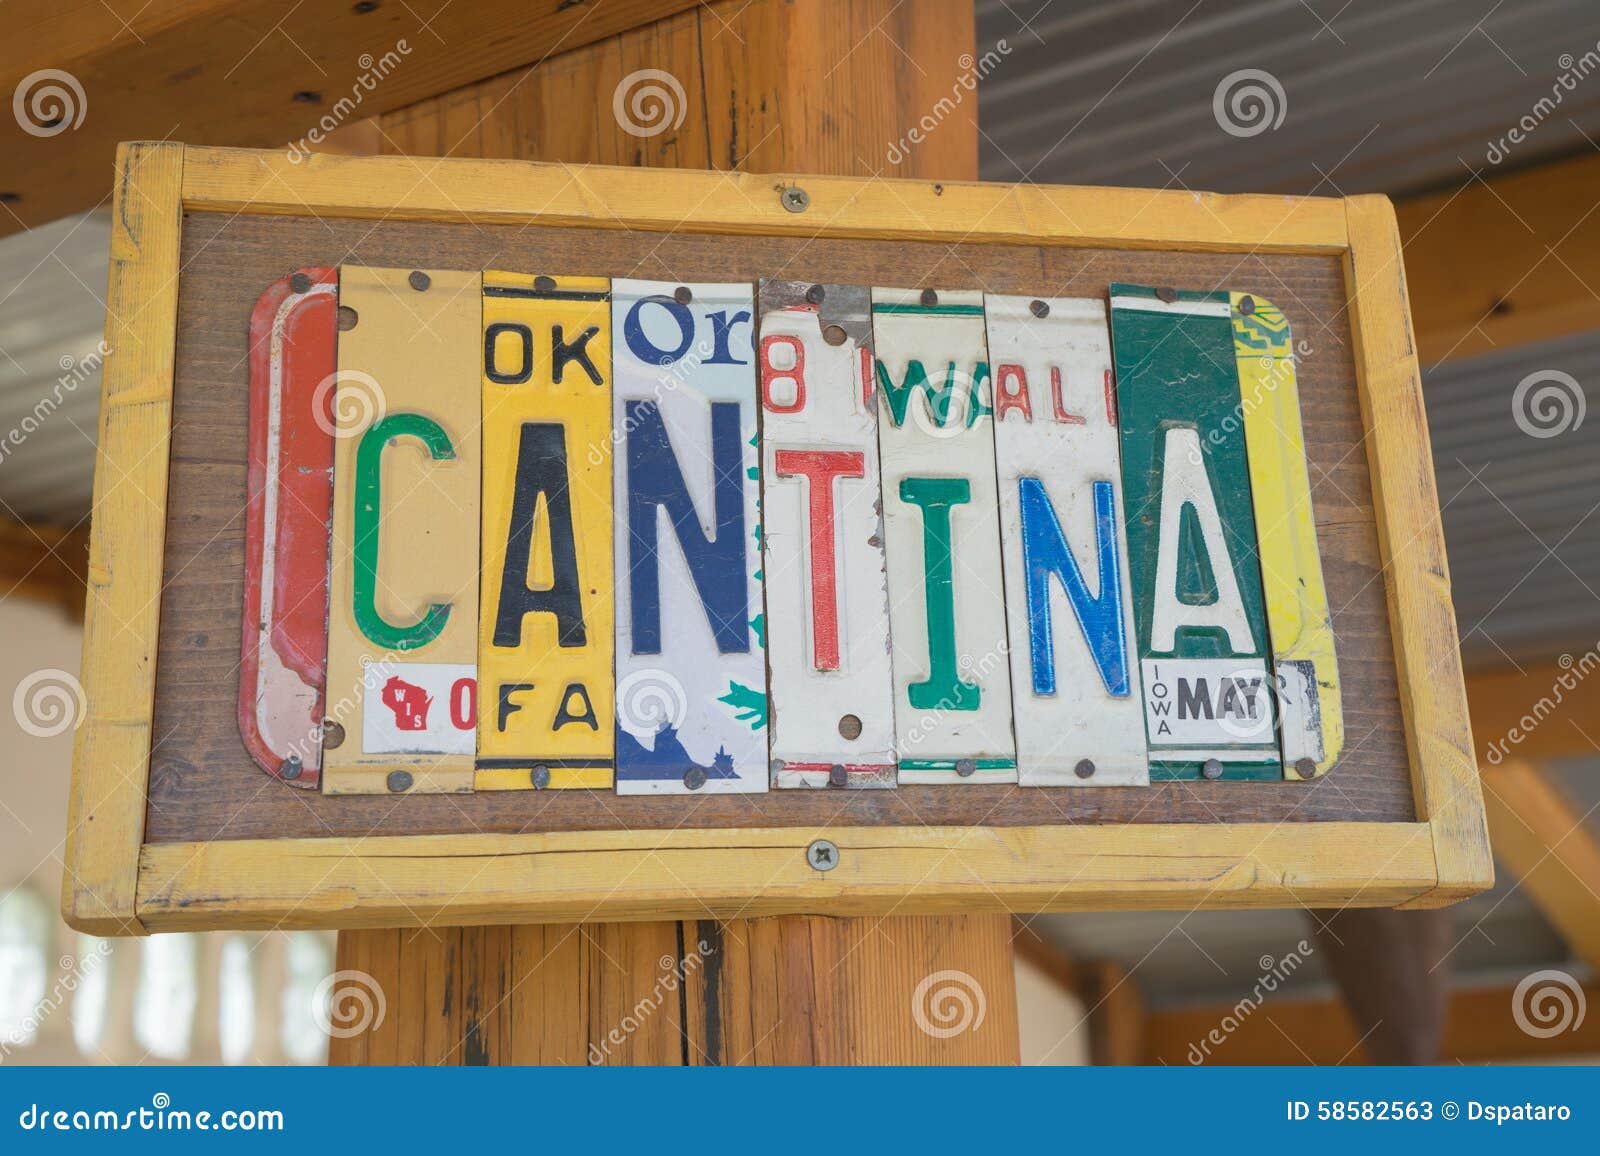 cantina sign